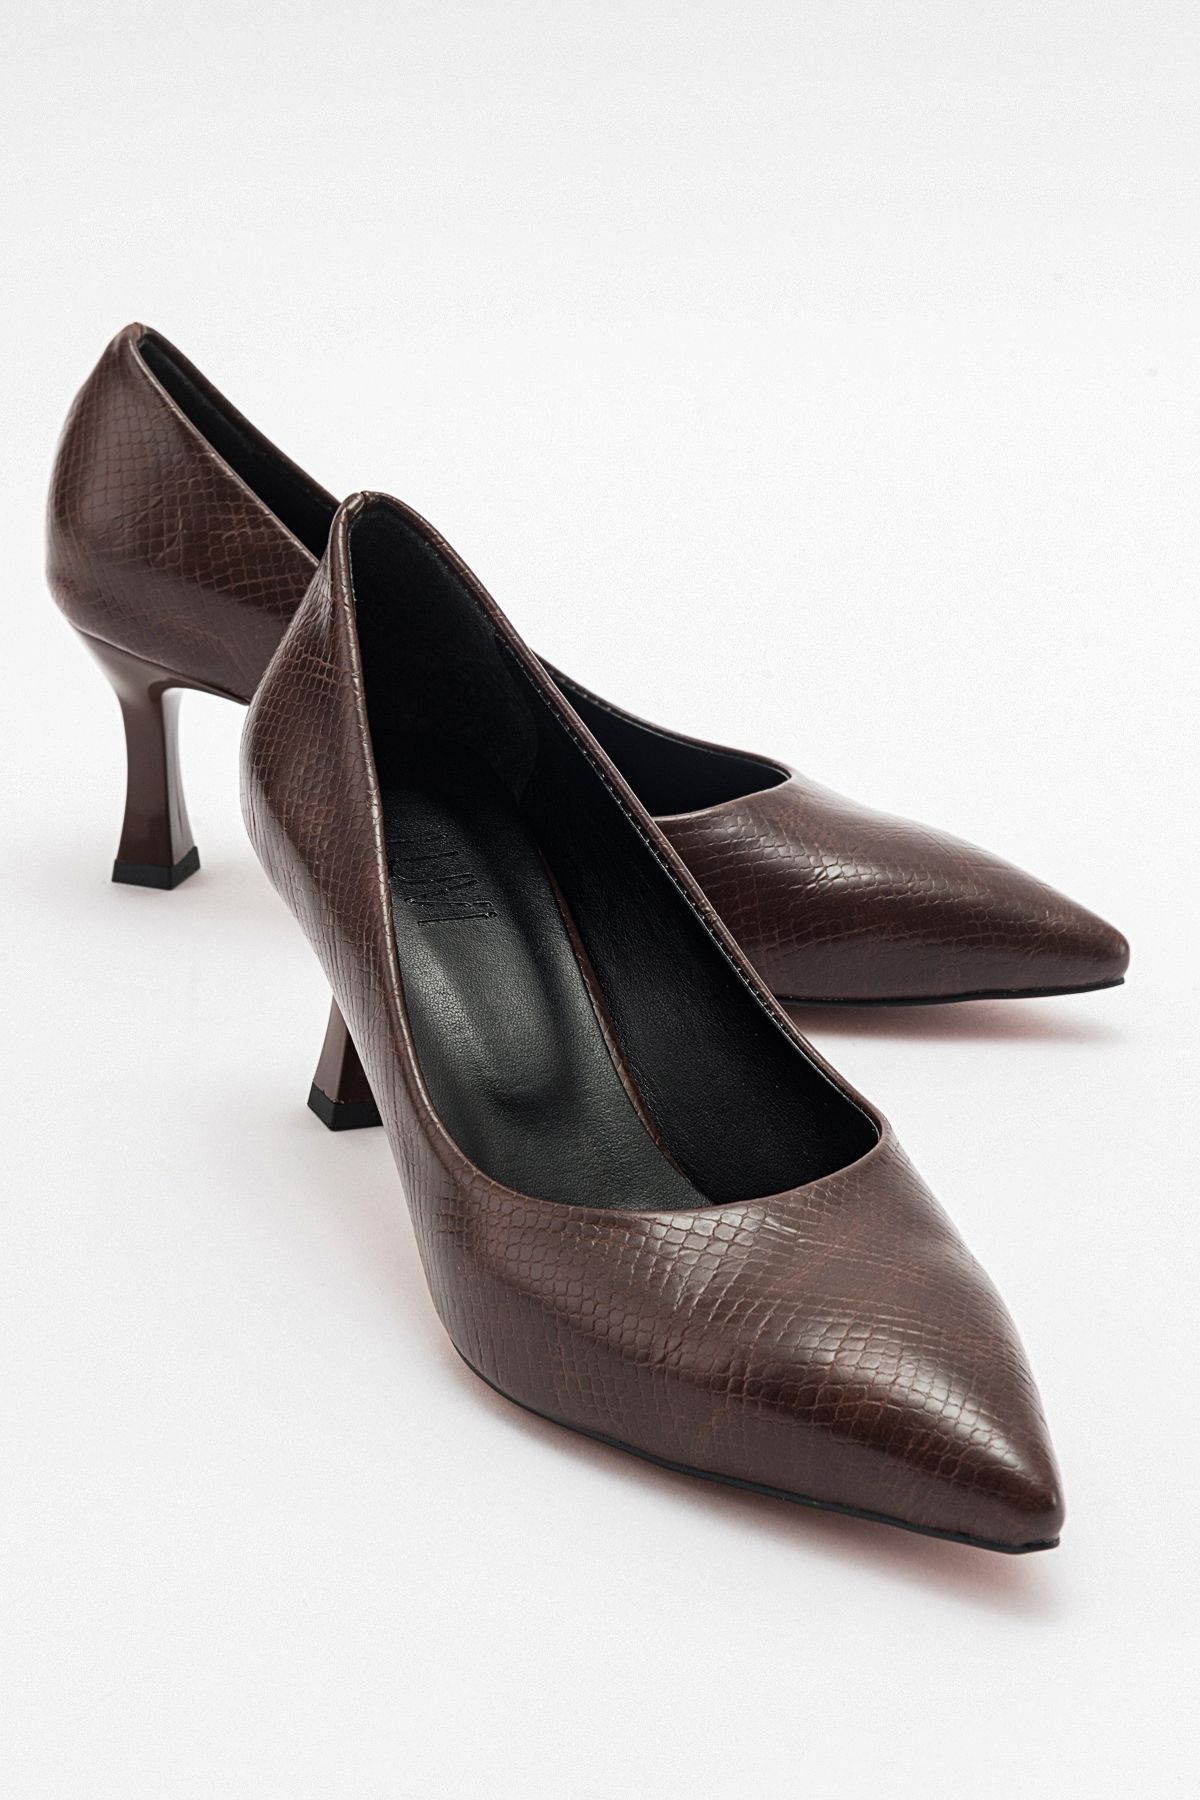 luvishoes PEDRA Kahve Baskı Kadın Topuklu Ayakkabı